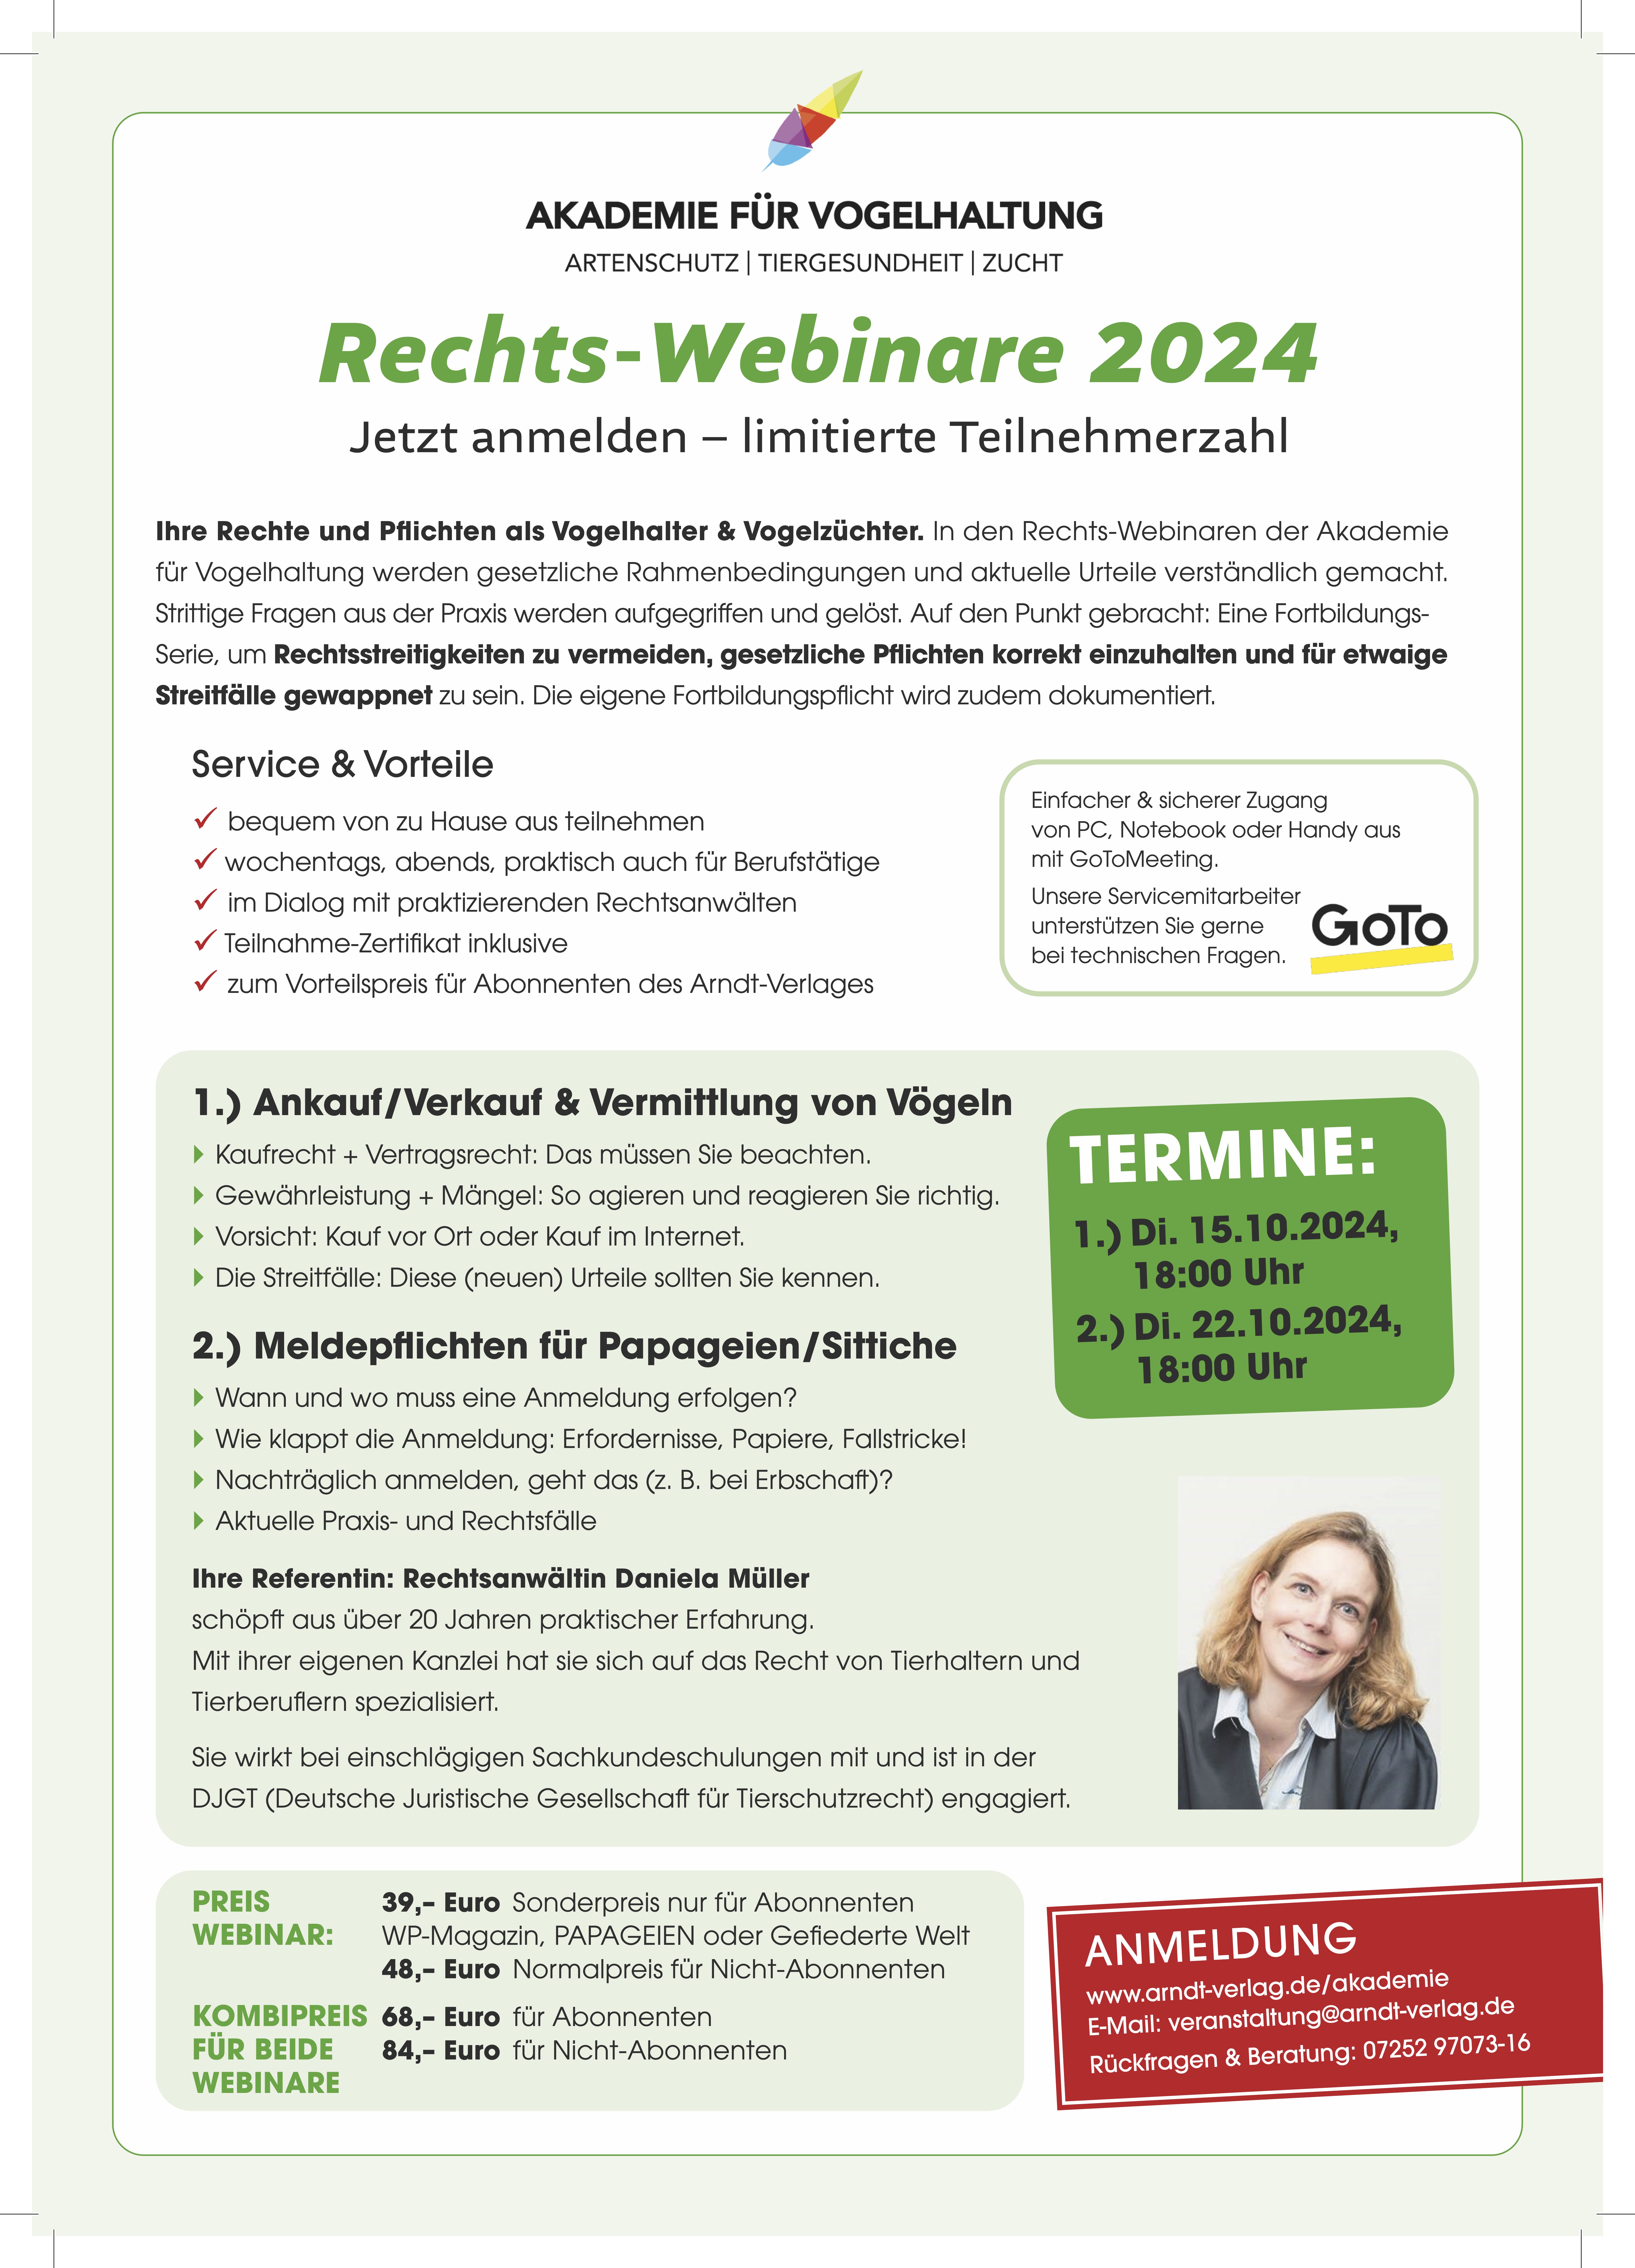 Rechts-Webinare 2024